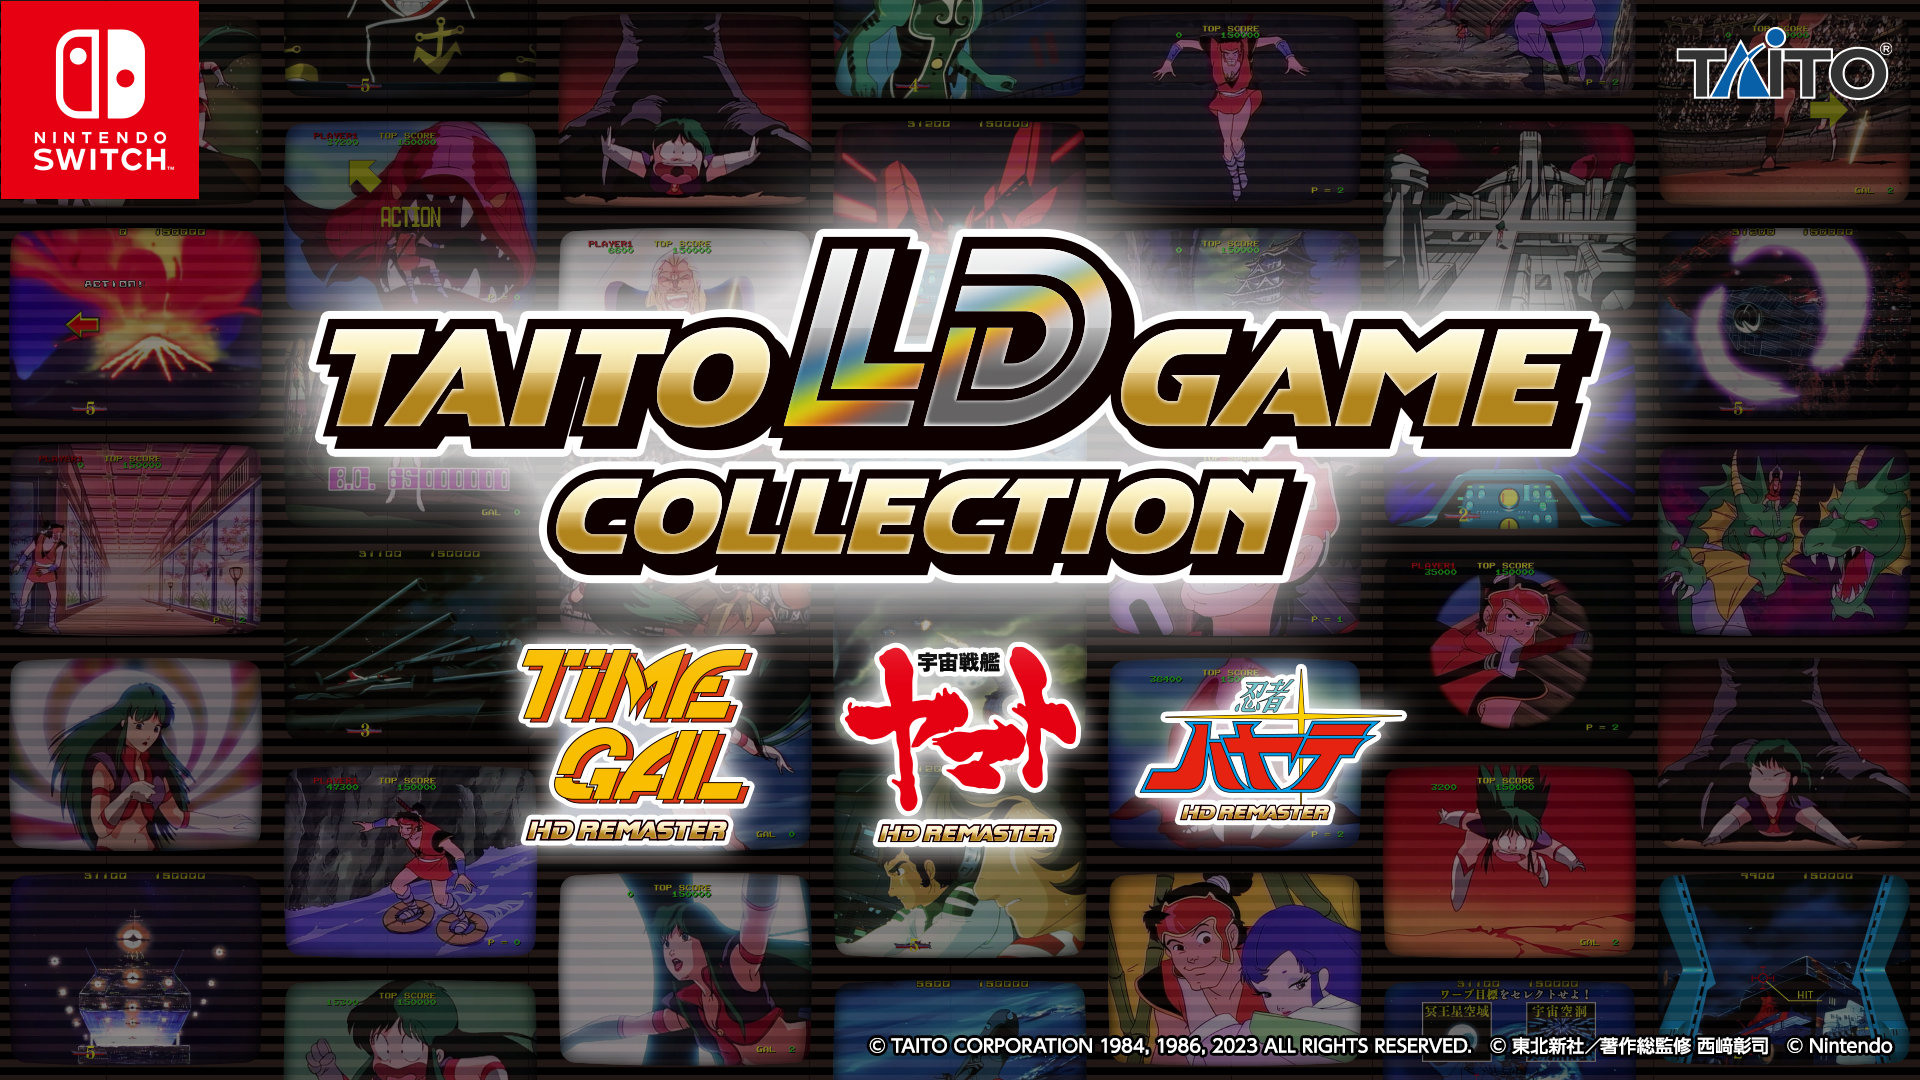 经典 LD 游戏合辑《TAITO LD Game Collection》12/14 发售 将收录《时空女孩》完全新作